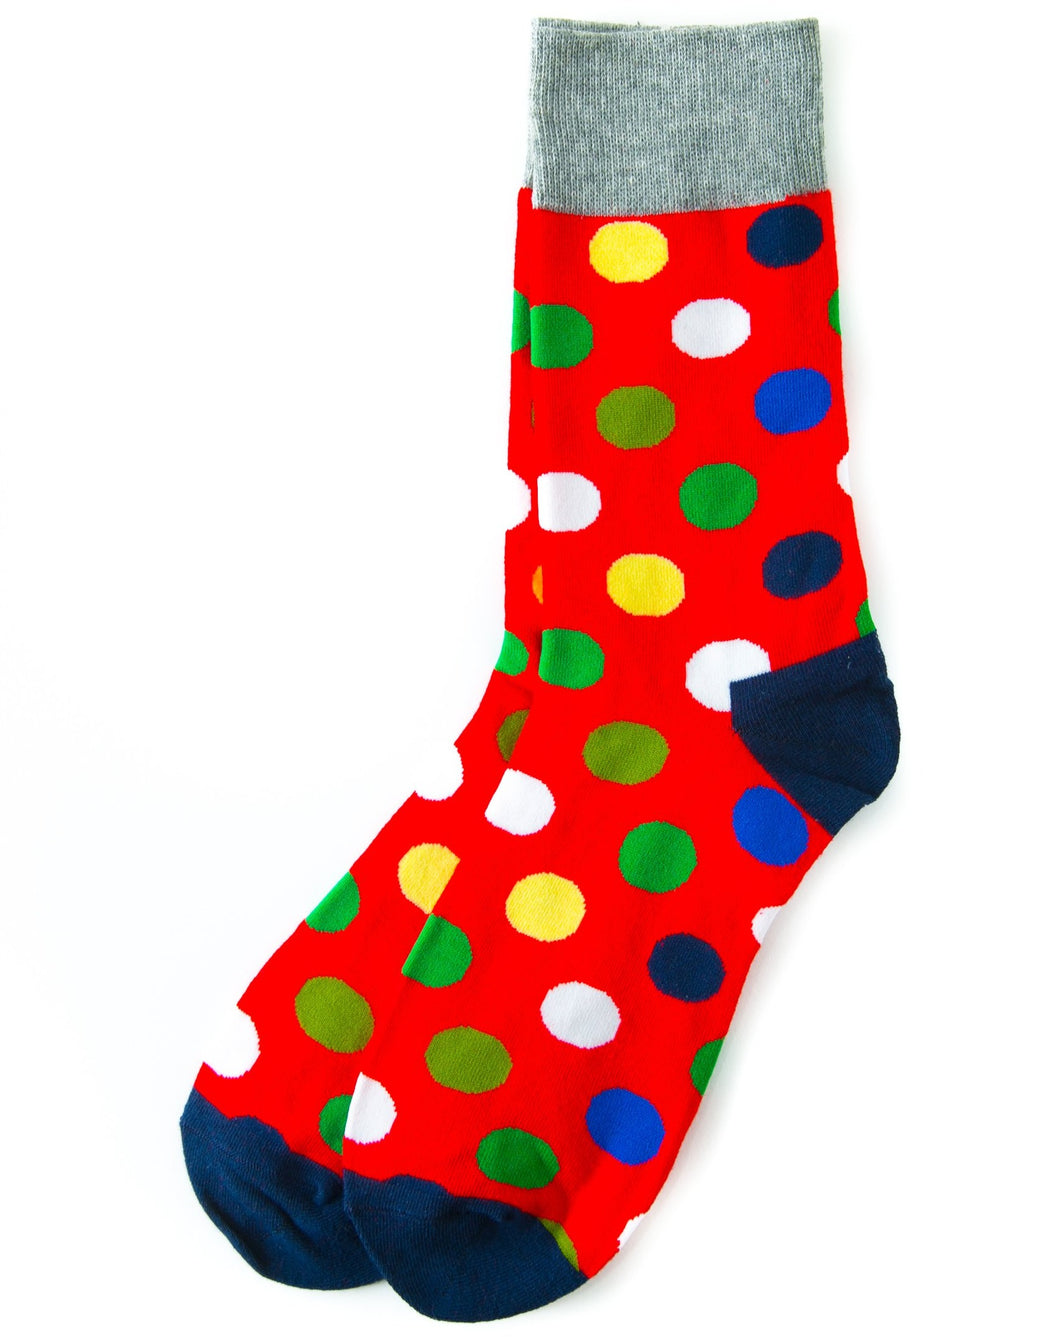 red polka dot socks